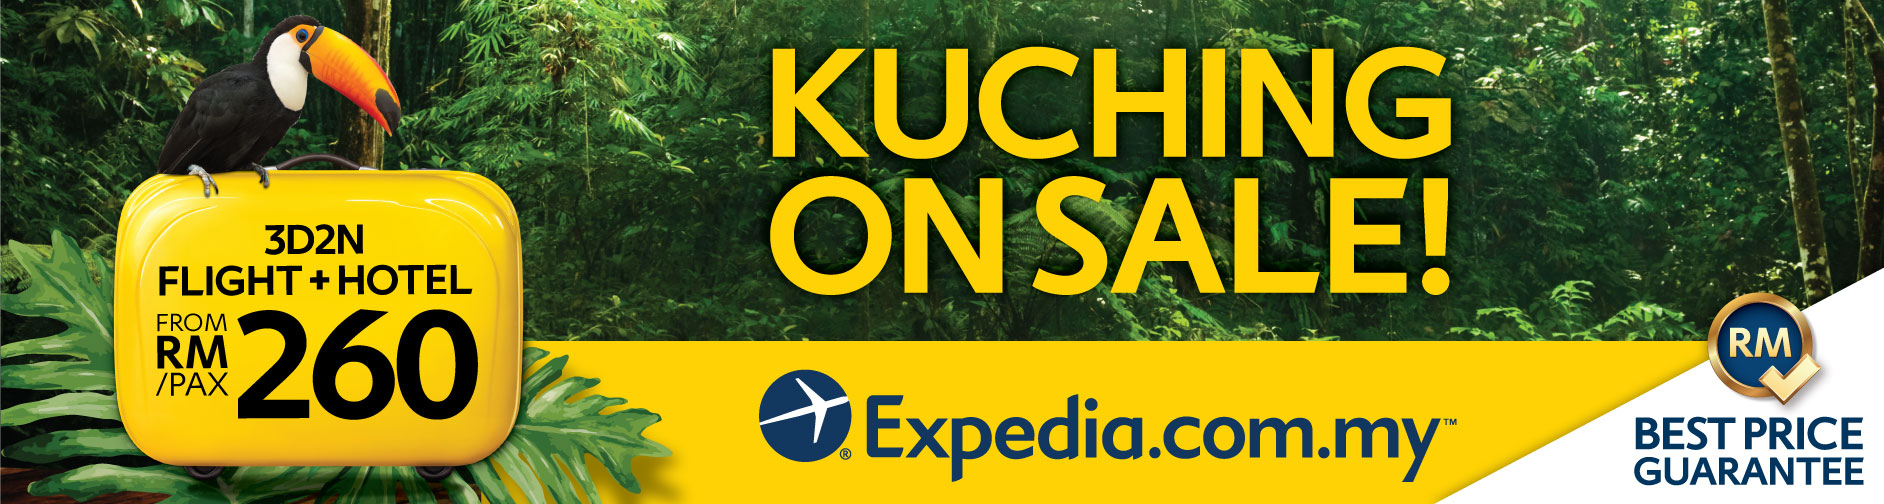 expedia-kuching-sale